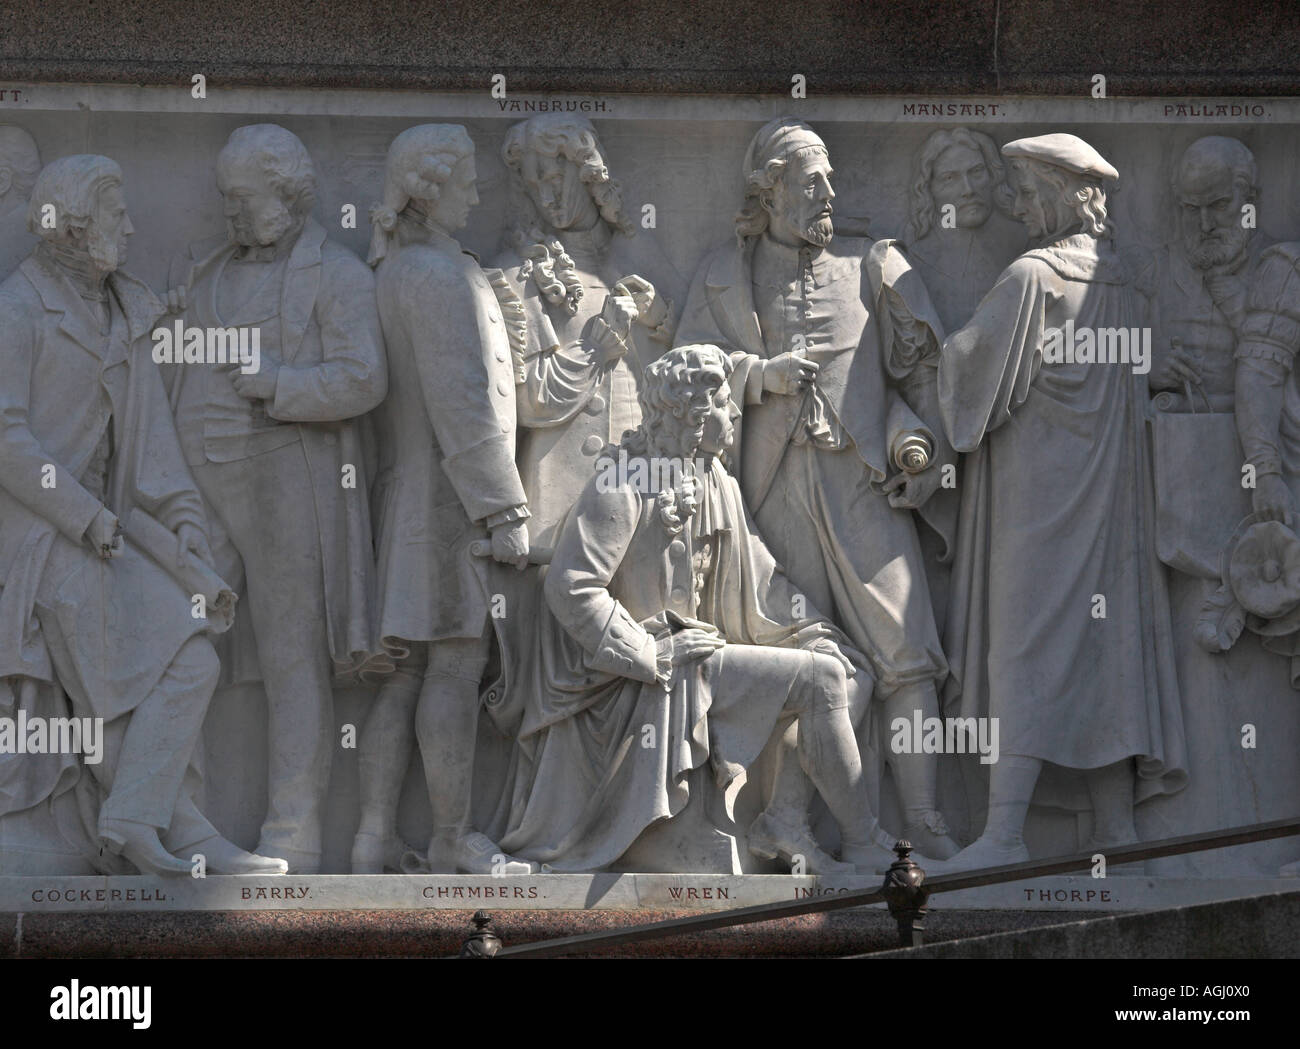 Sir Christopher Wren sentados junto a Vanbrugh y otros notarios histórico en el friso del Albert Memorial en Londres Foto de stock